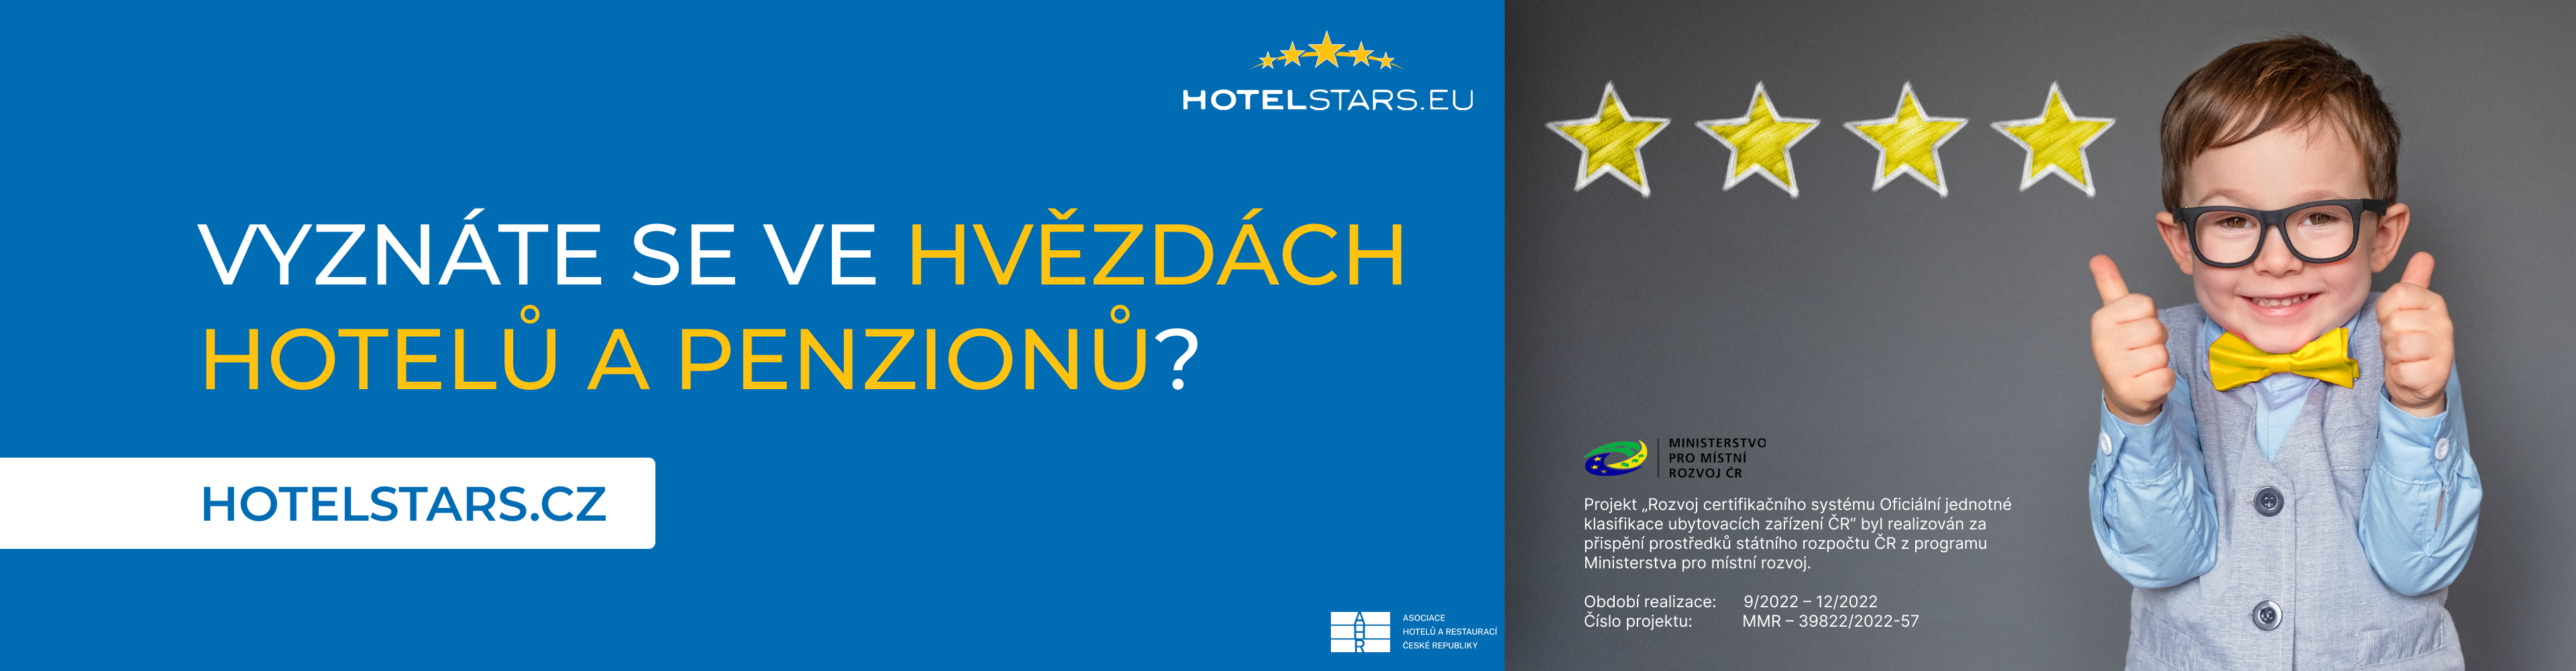 Vyznáte se ve hvězdách hotelů a penzionů? Hotelstars.cz